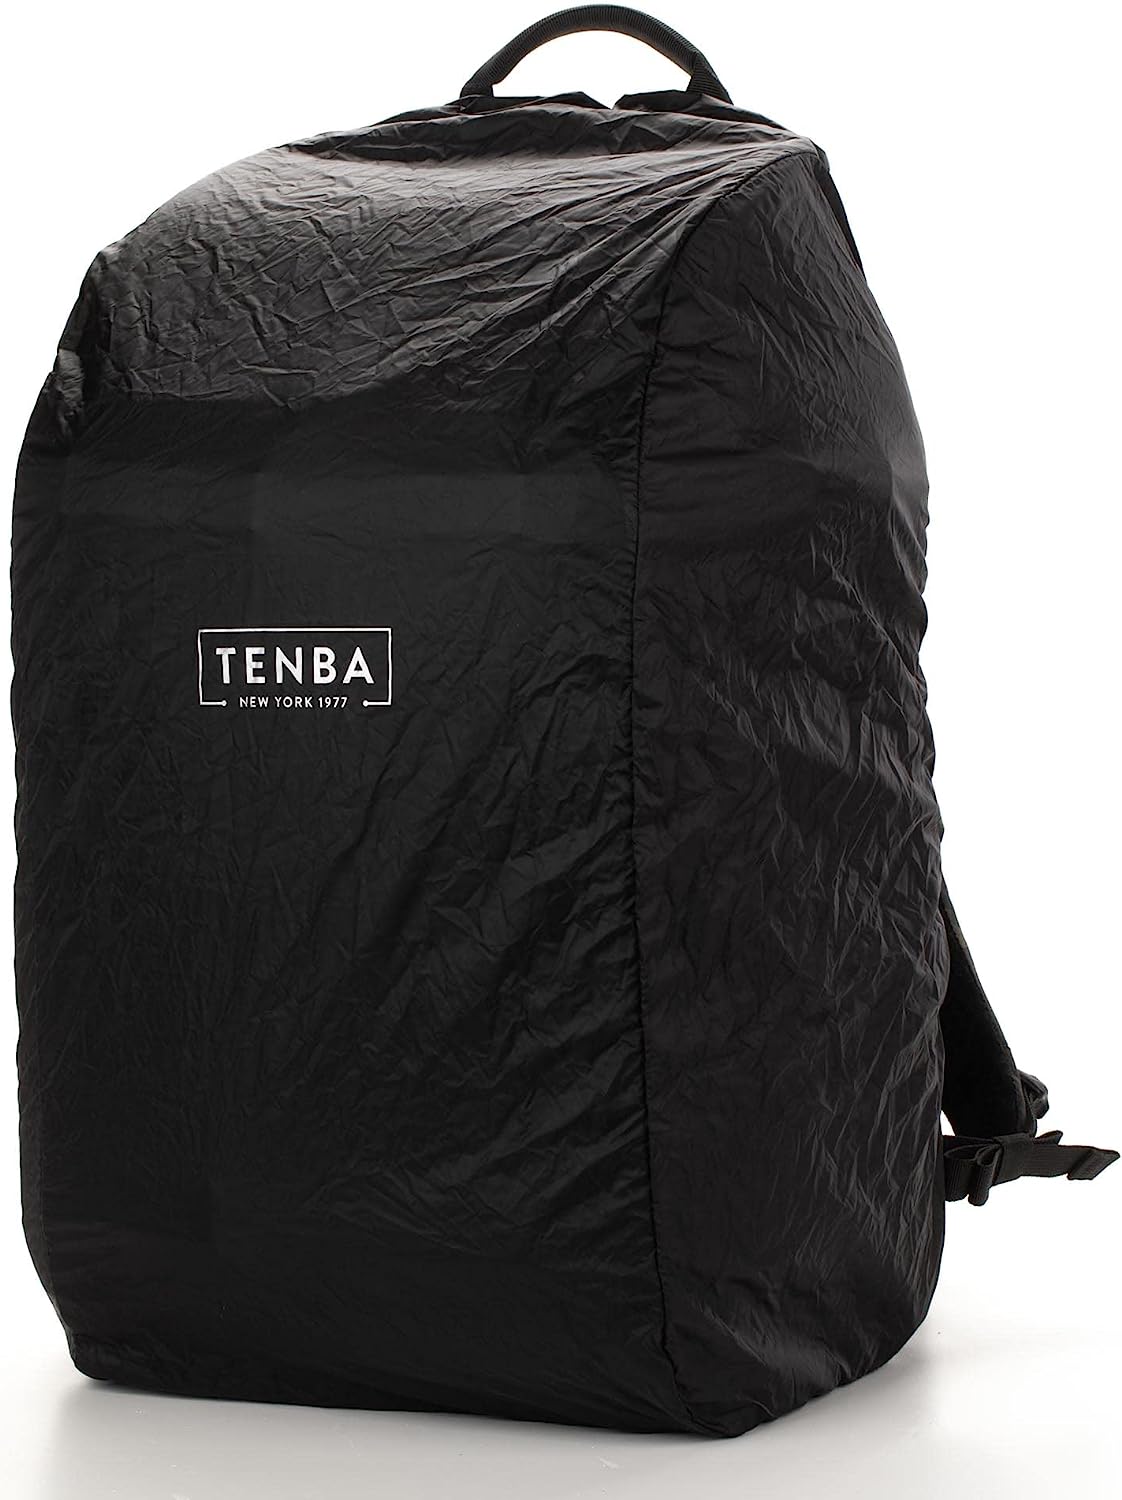 TENBA AXIS V2 LT 32L CAMERA BACKPACK – BLACK